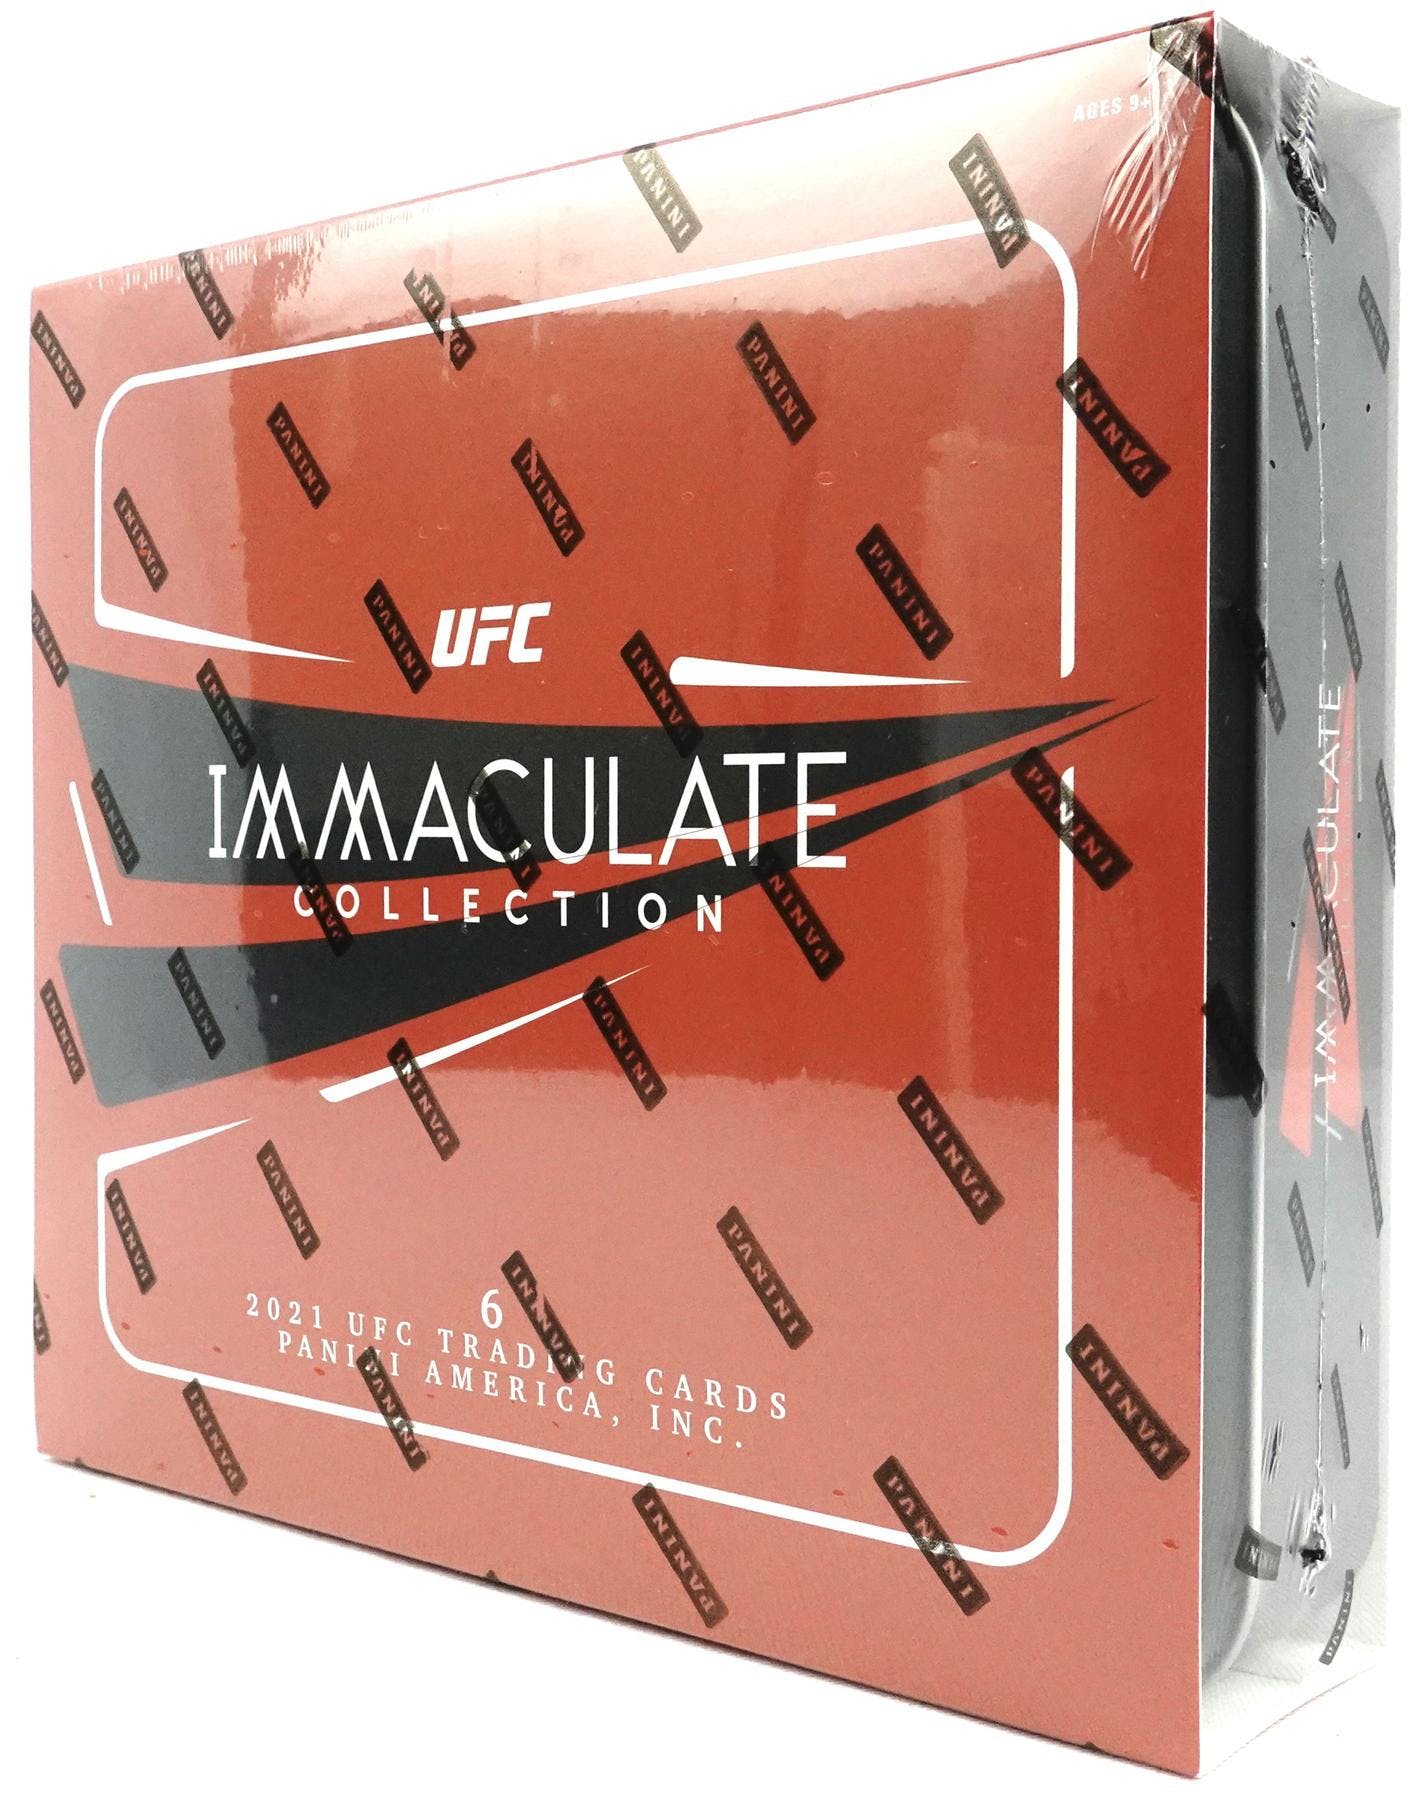 2021 Panini Immaculate UFC Hobby Box - Miraj Trading